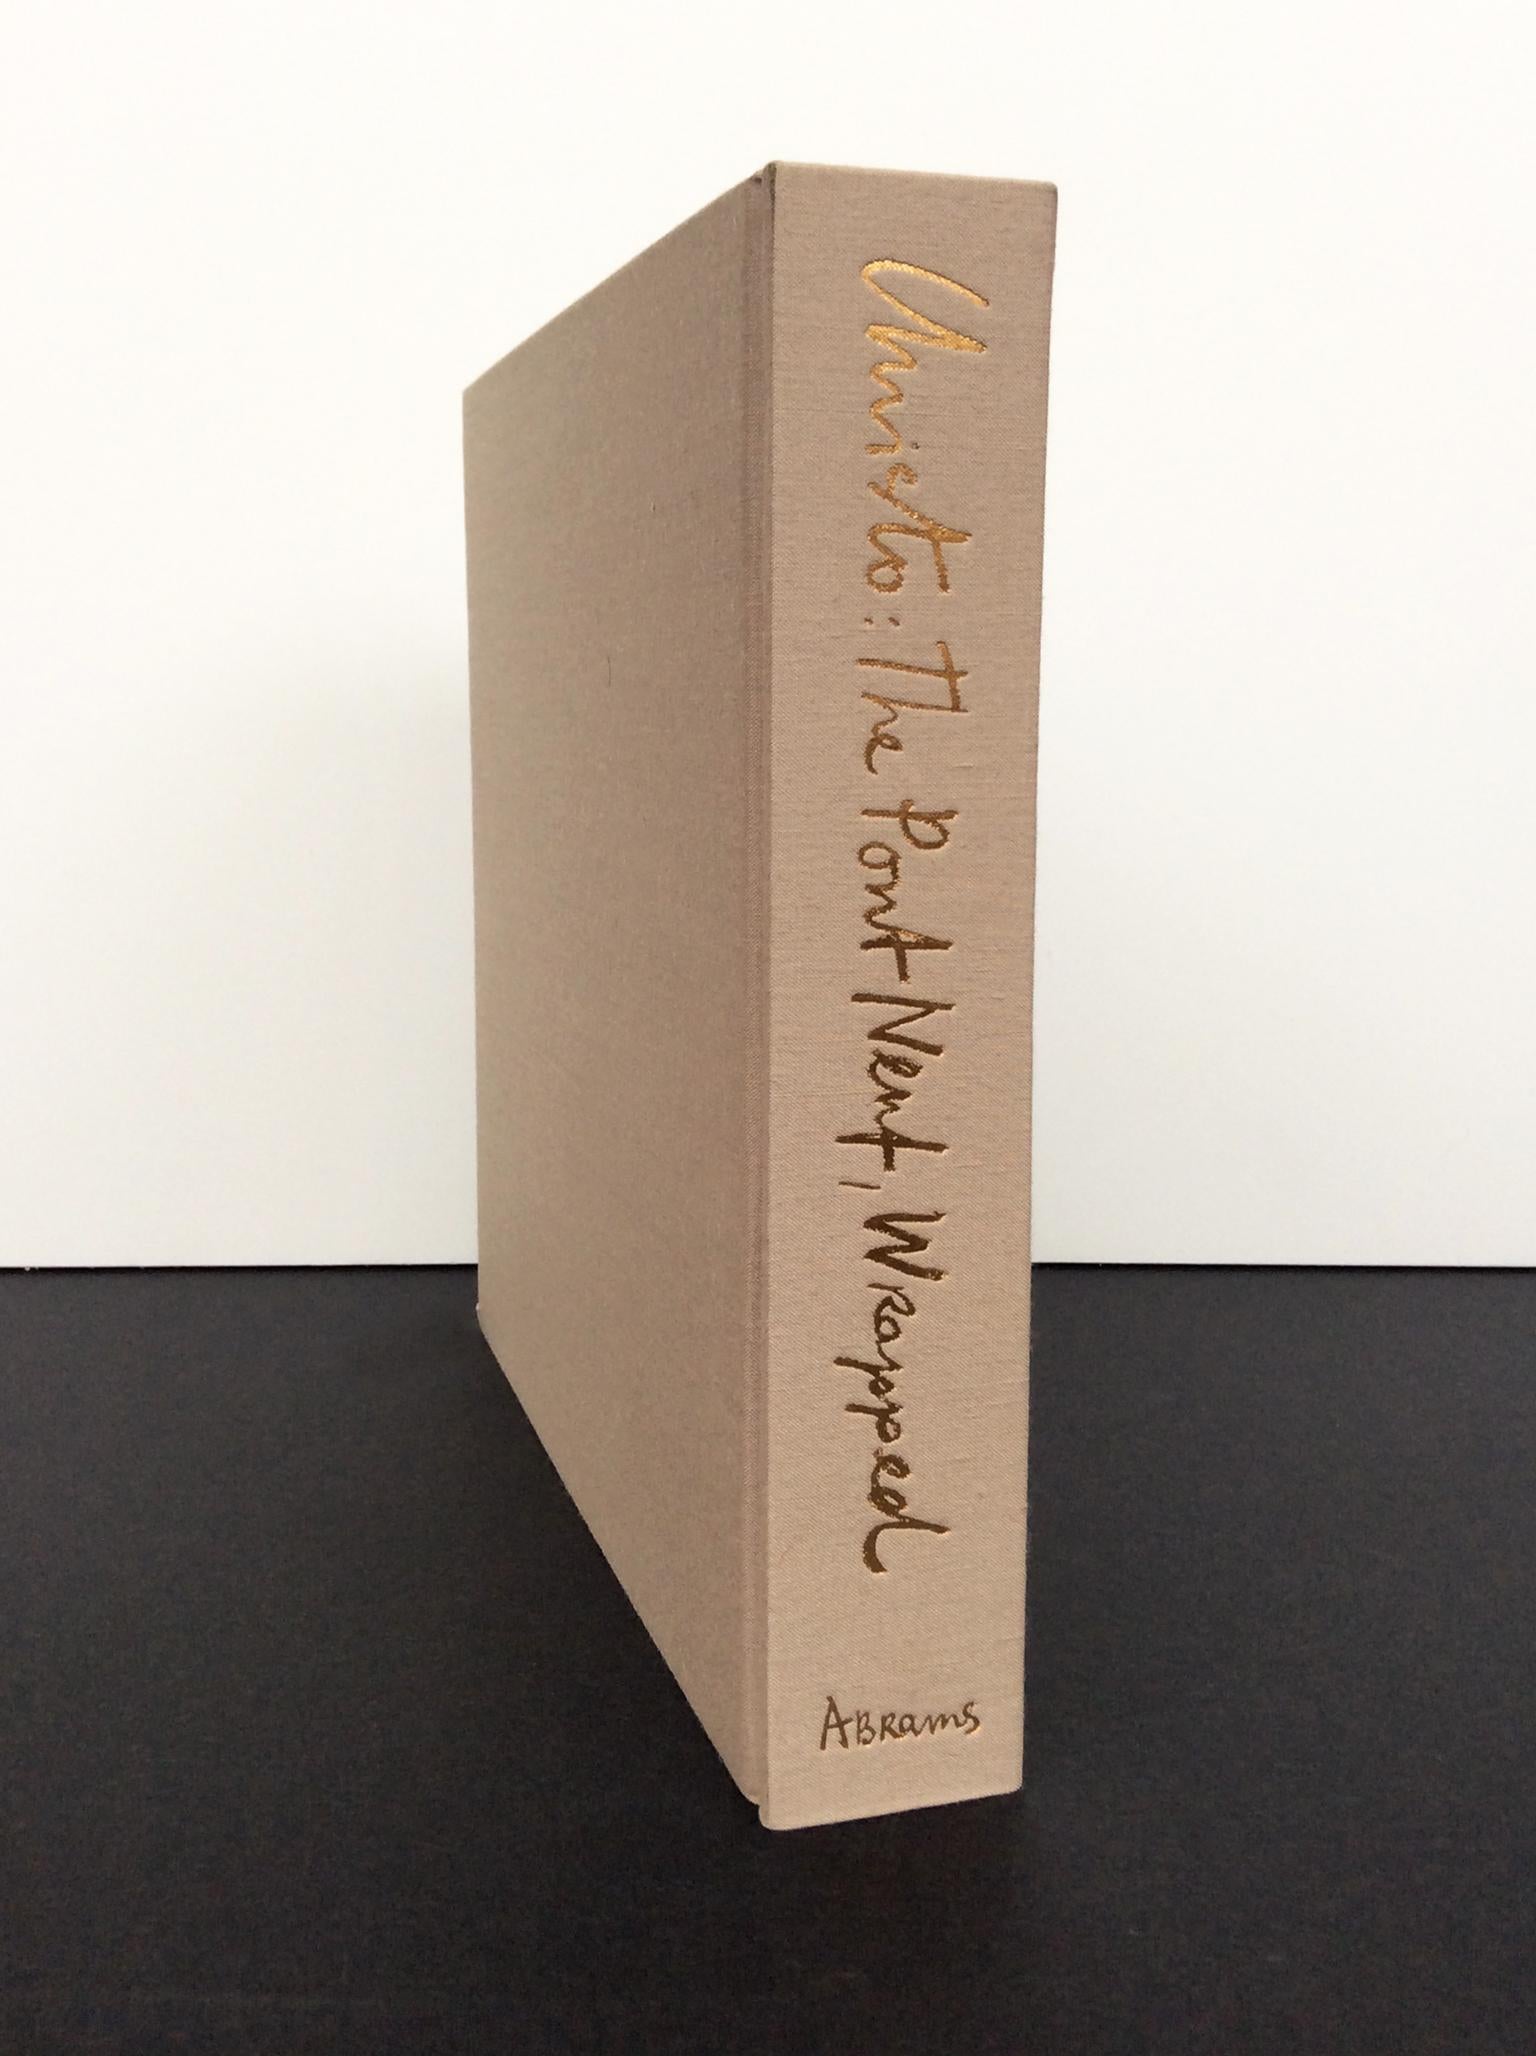 American Christo & Jeanne-Claude Monograph 